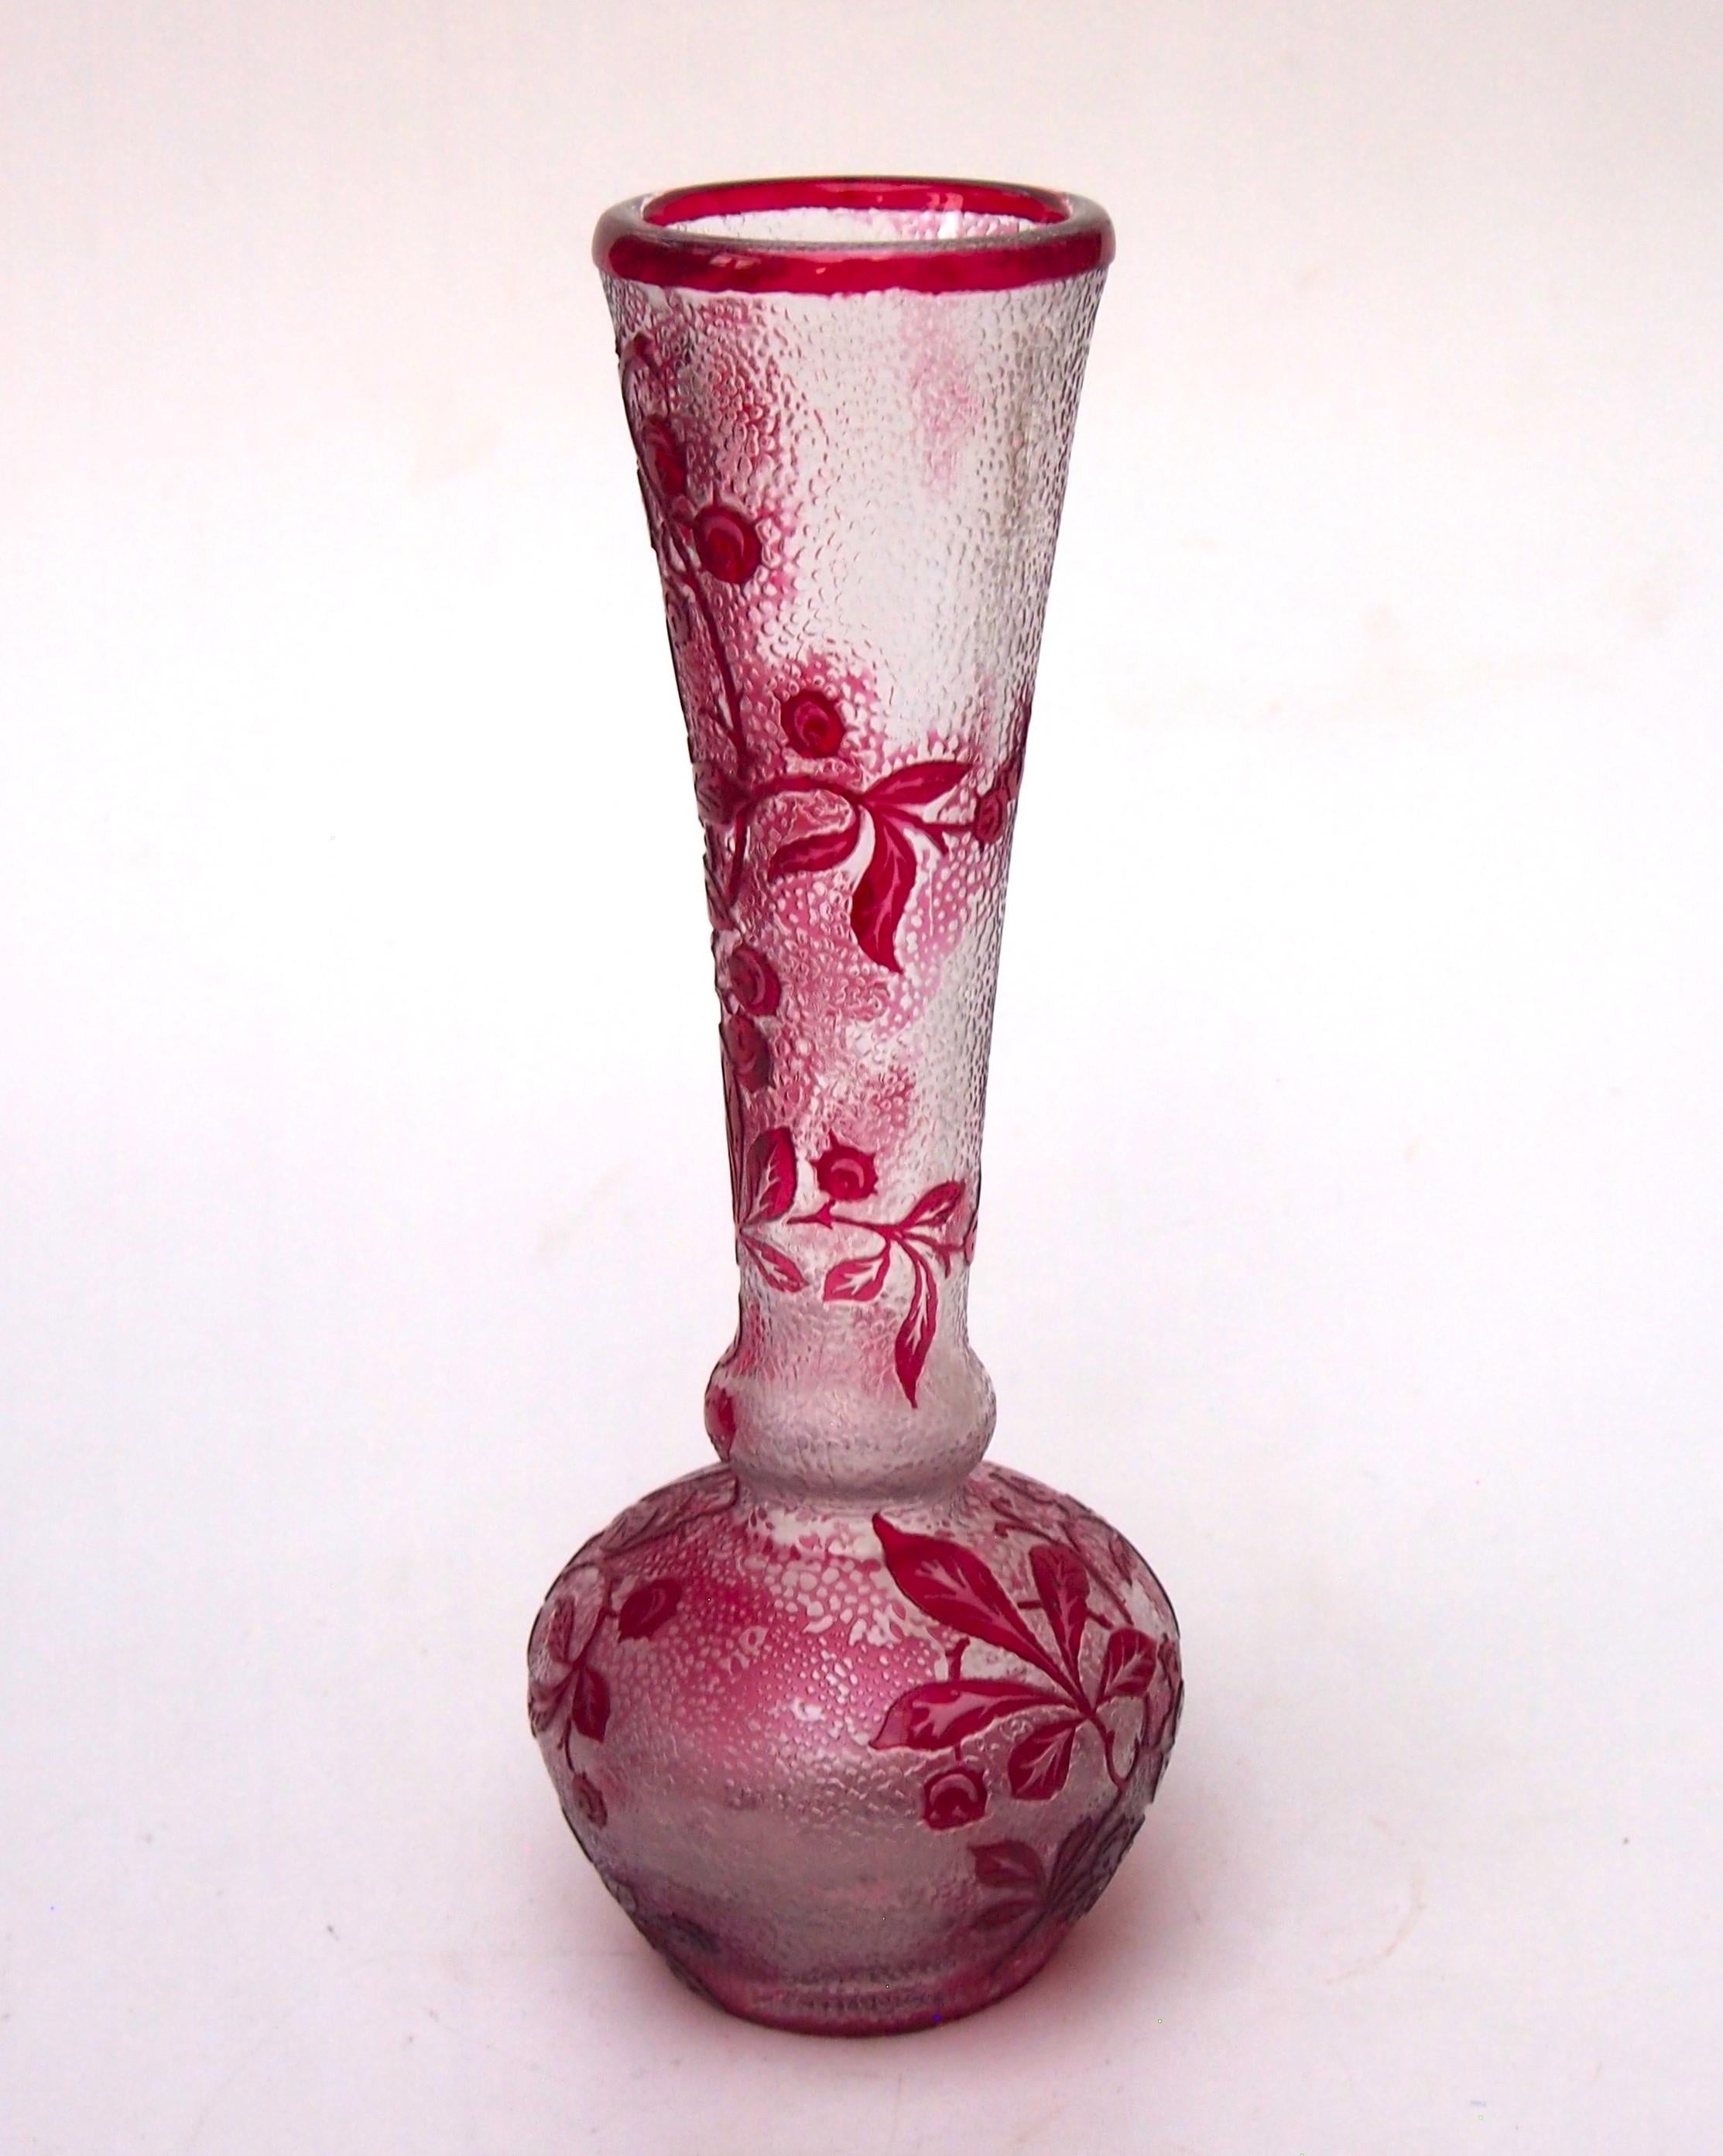 Klassische Baccarat Kamee-Kristallvase c 8 Zoll hohe Vase, die leicht stilisierte Rosskastanienzweige mit stacheligen Kastanien in tiefem Rot über klar - mit einem stilisierten Hintergrundmuster im klaren Bereich - darstellt. Gemacht  c 1900. Sie